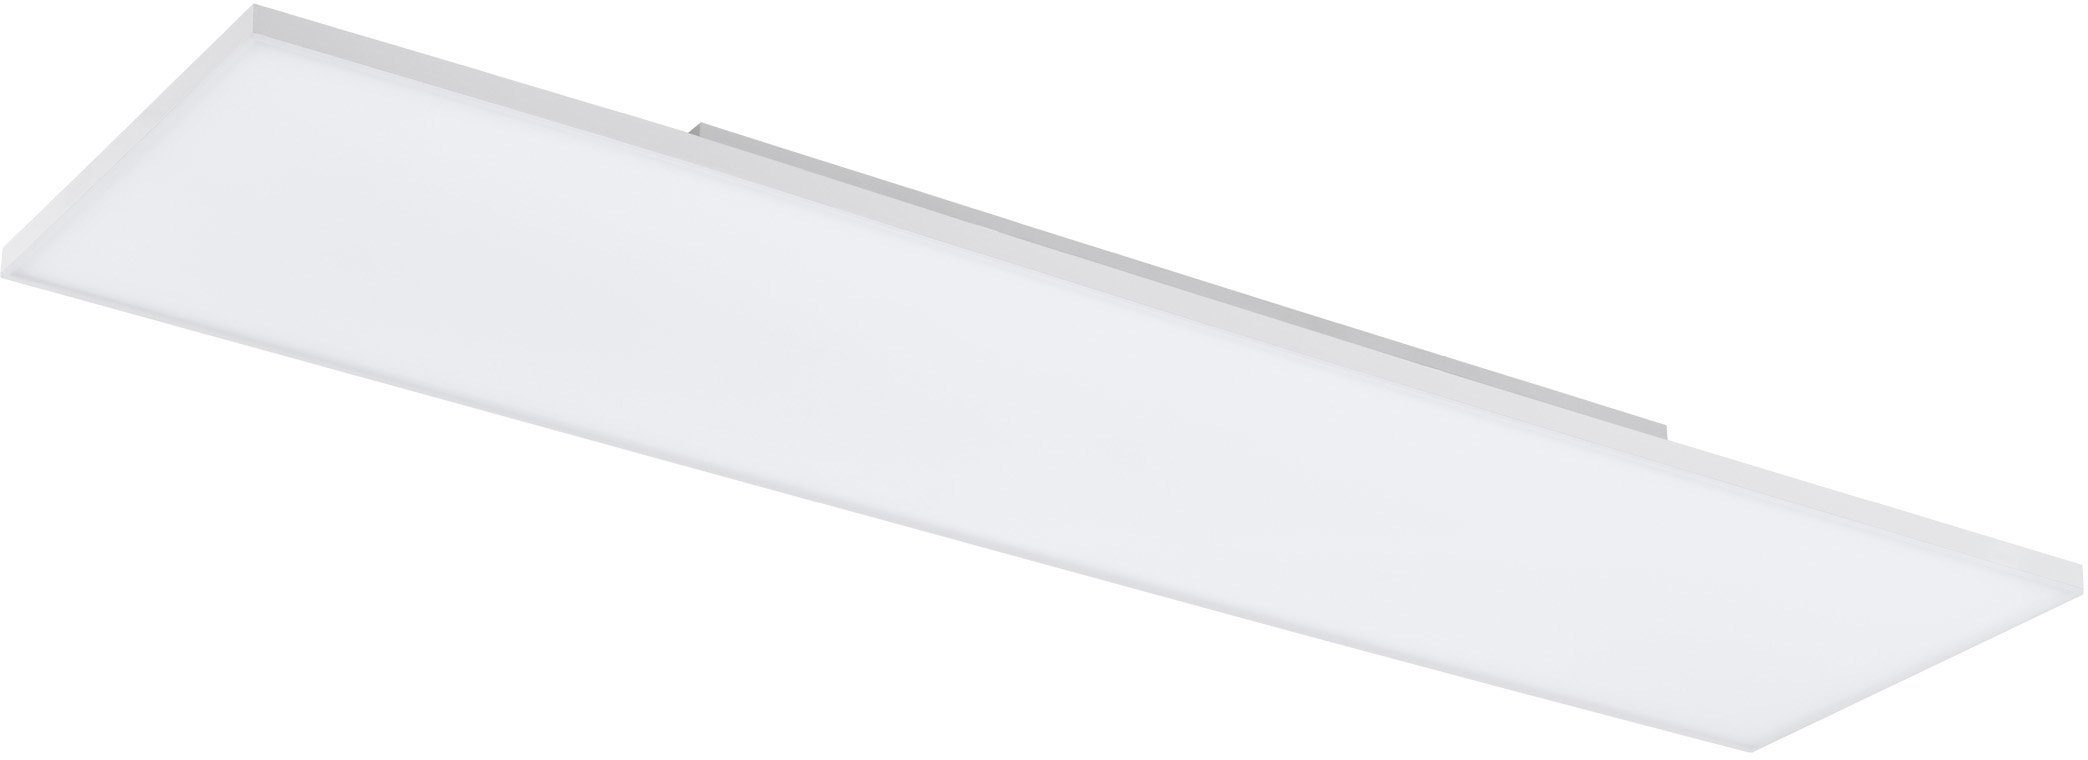 EGLO LED Panel TURCONA, LED fest integriert, Warmweiß, rahmenlos, flaches  Design, Ein Schweberahmen ist im Lieferumfang